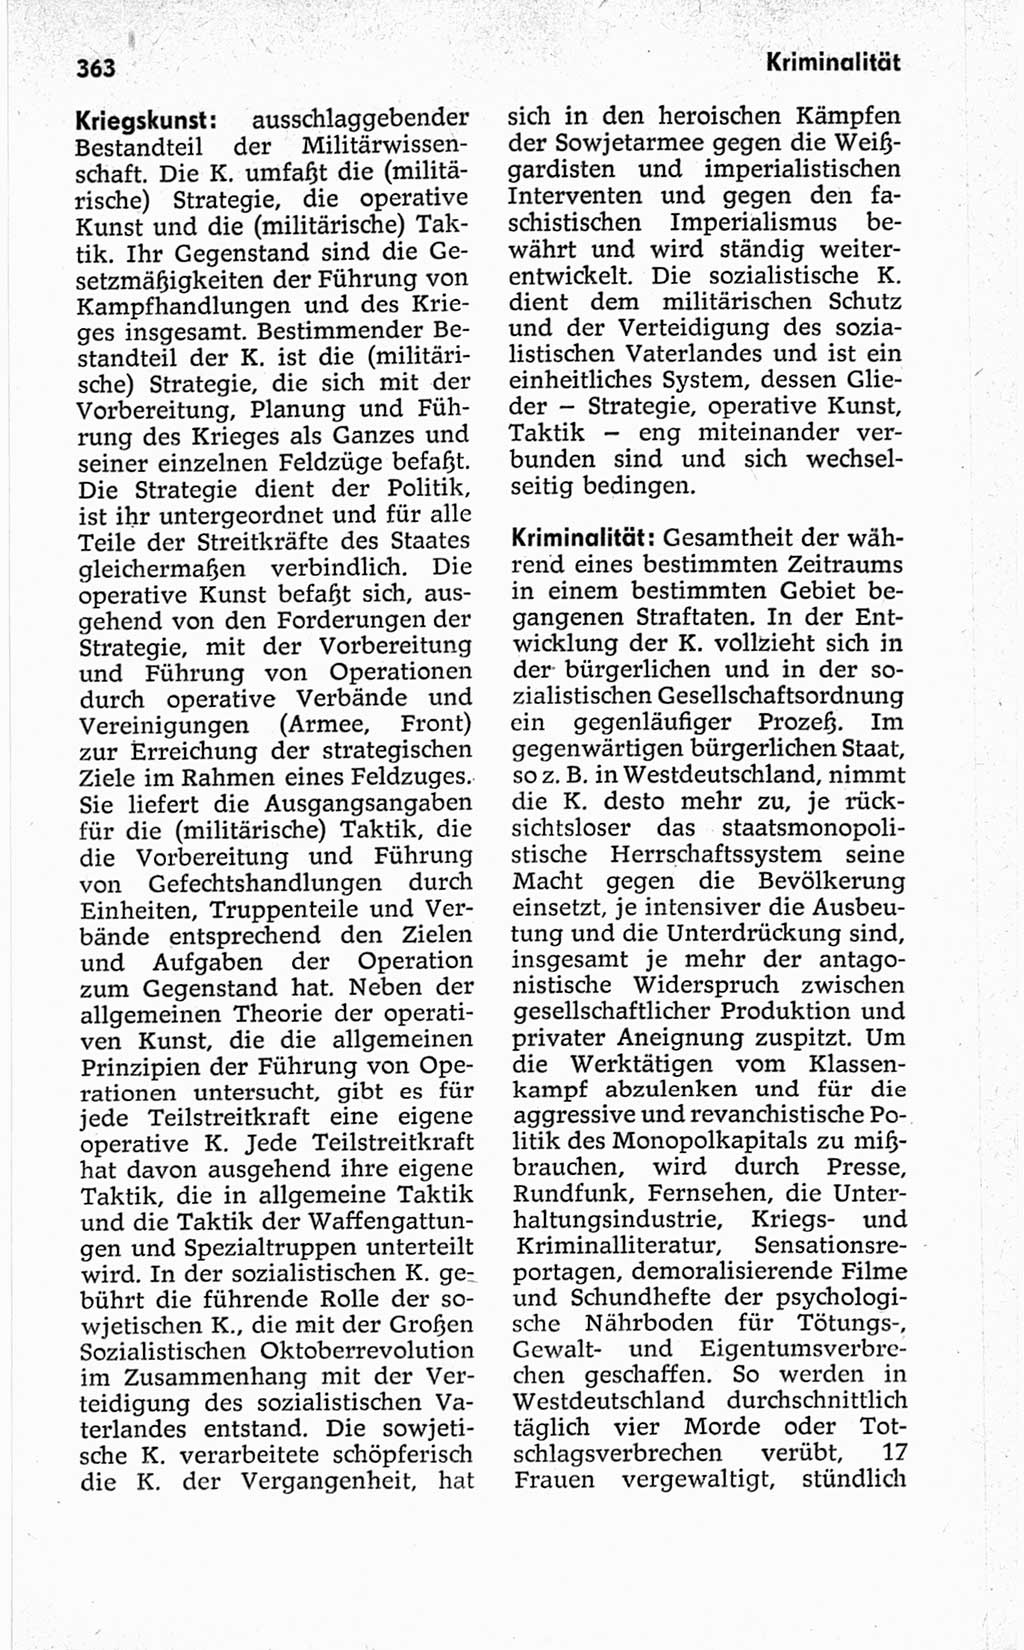 Kleines politisches Wörterbuch [Deutsche Demokratische Republik (DDR)] 1967, Seite 363 (Kl. pol. Wb. DDR 1967, S. 363)